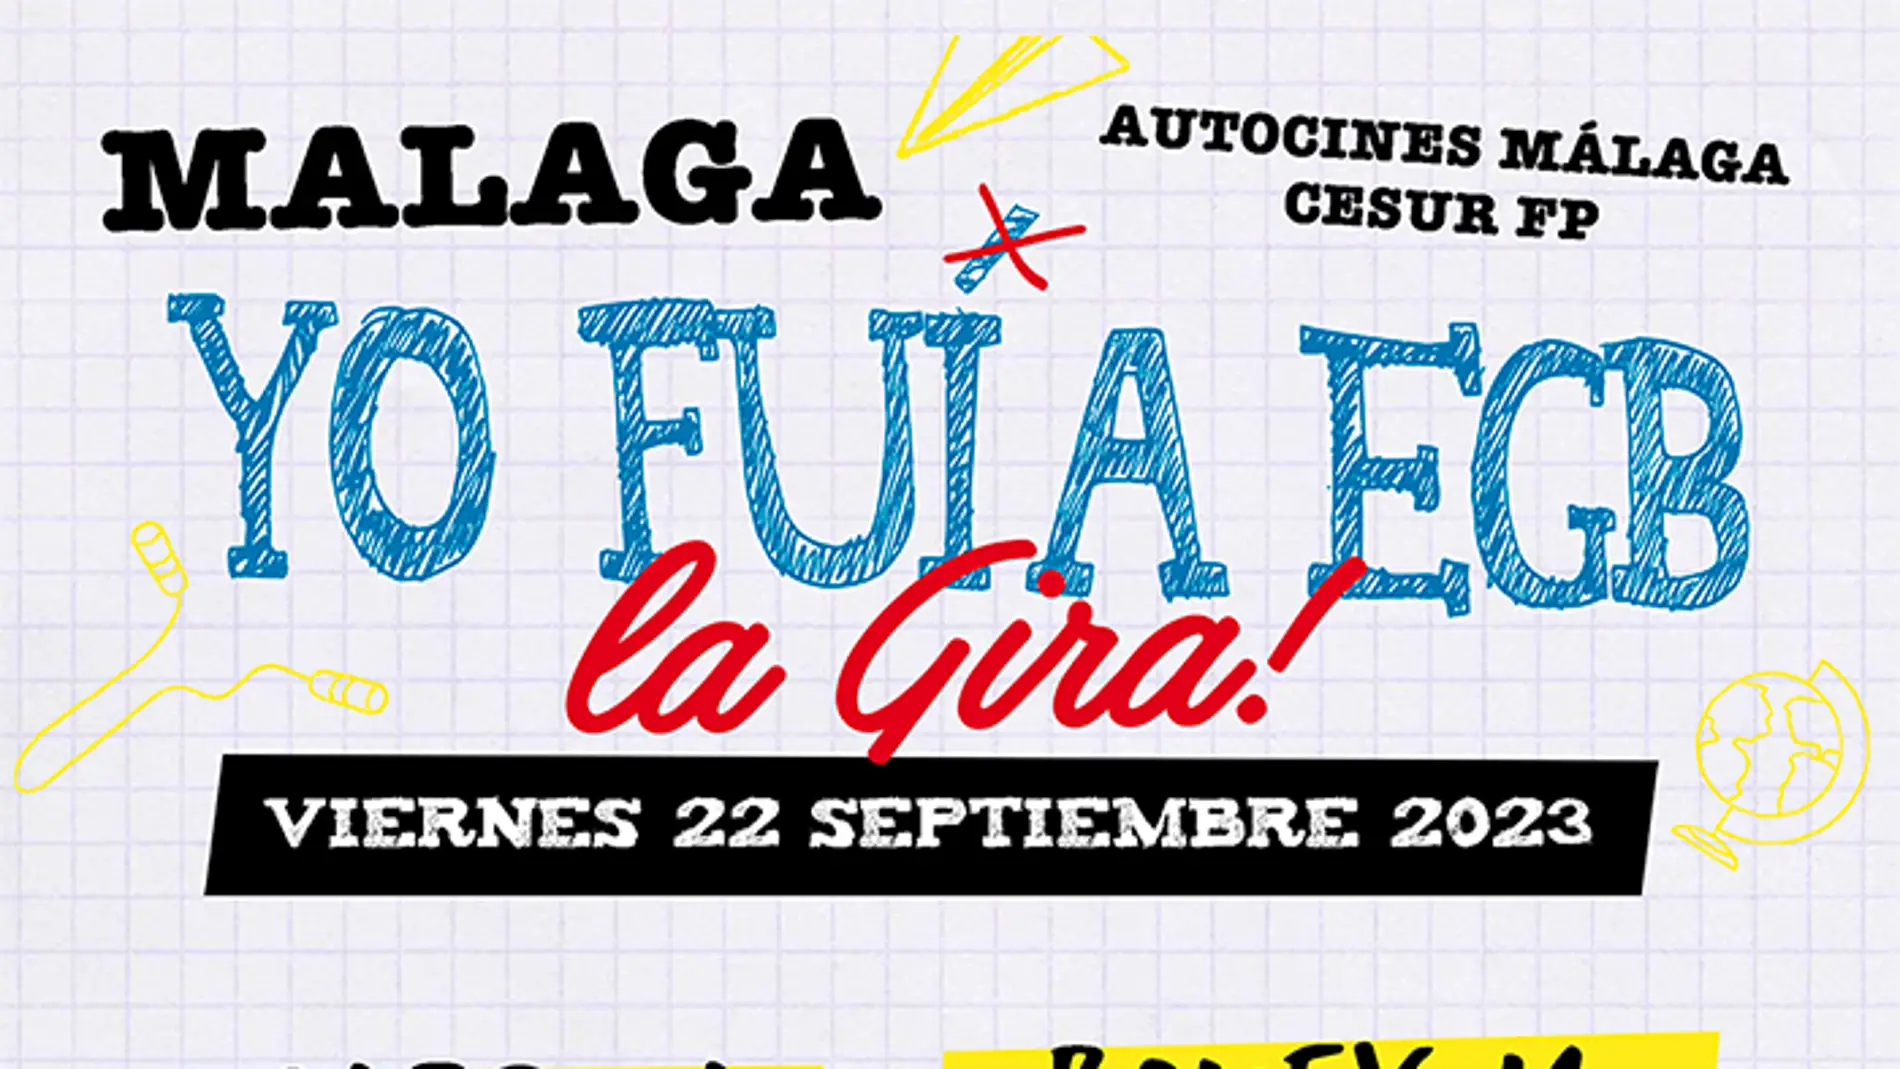 El show musical "Yo fui a EGB" aterriza en la capital el 22 de septiembre en el Autocine Málaga